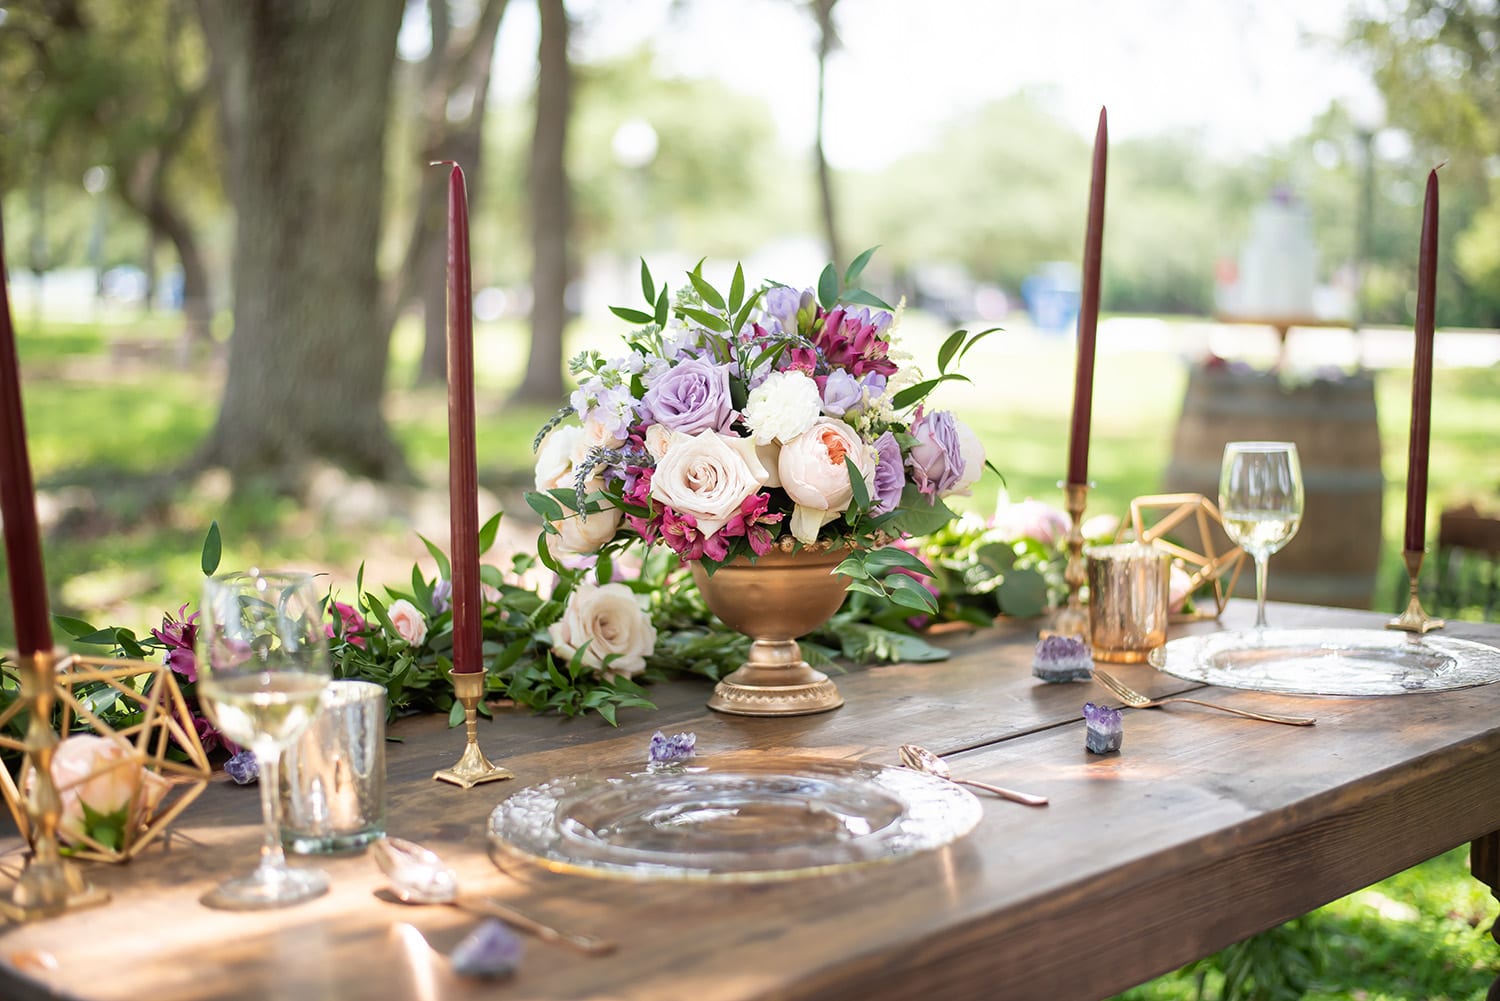 Casa feliz wedding lavender color palette roses burgundy candles golden details wooden sweetheart table